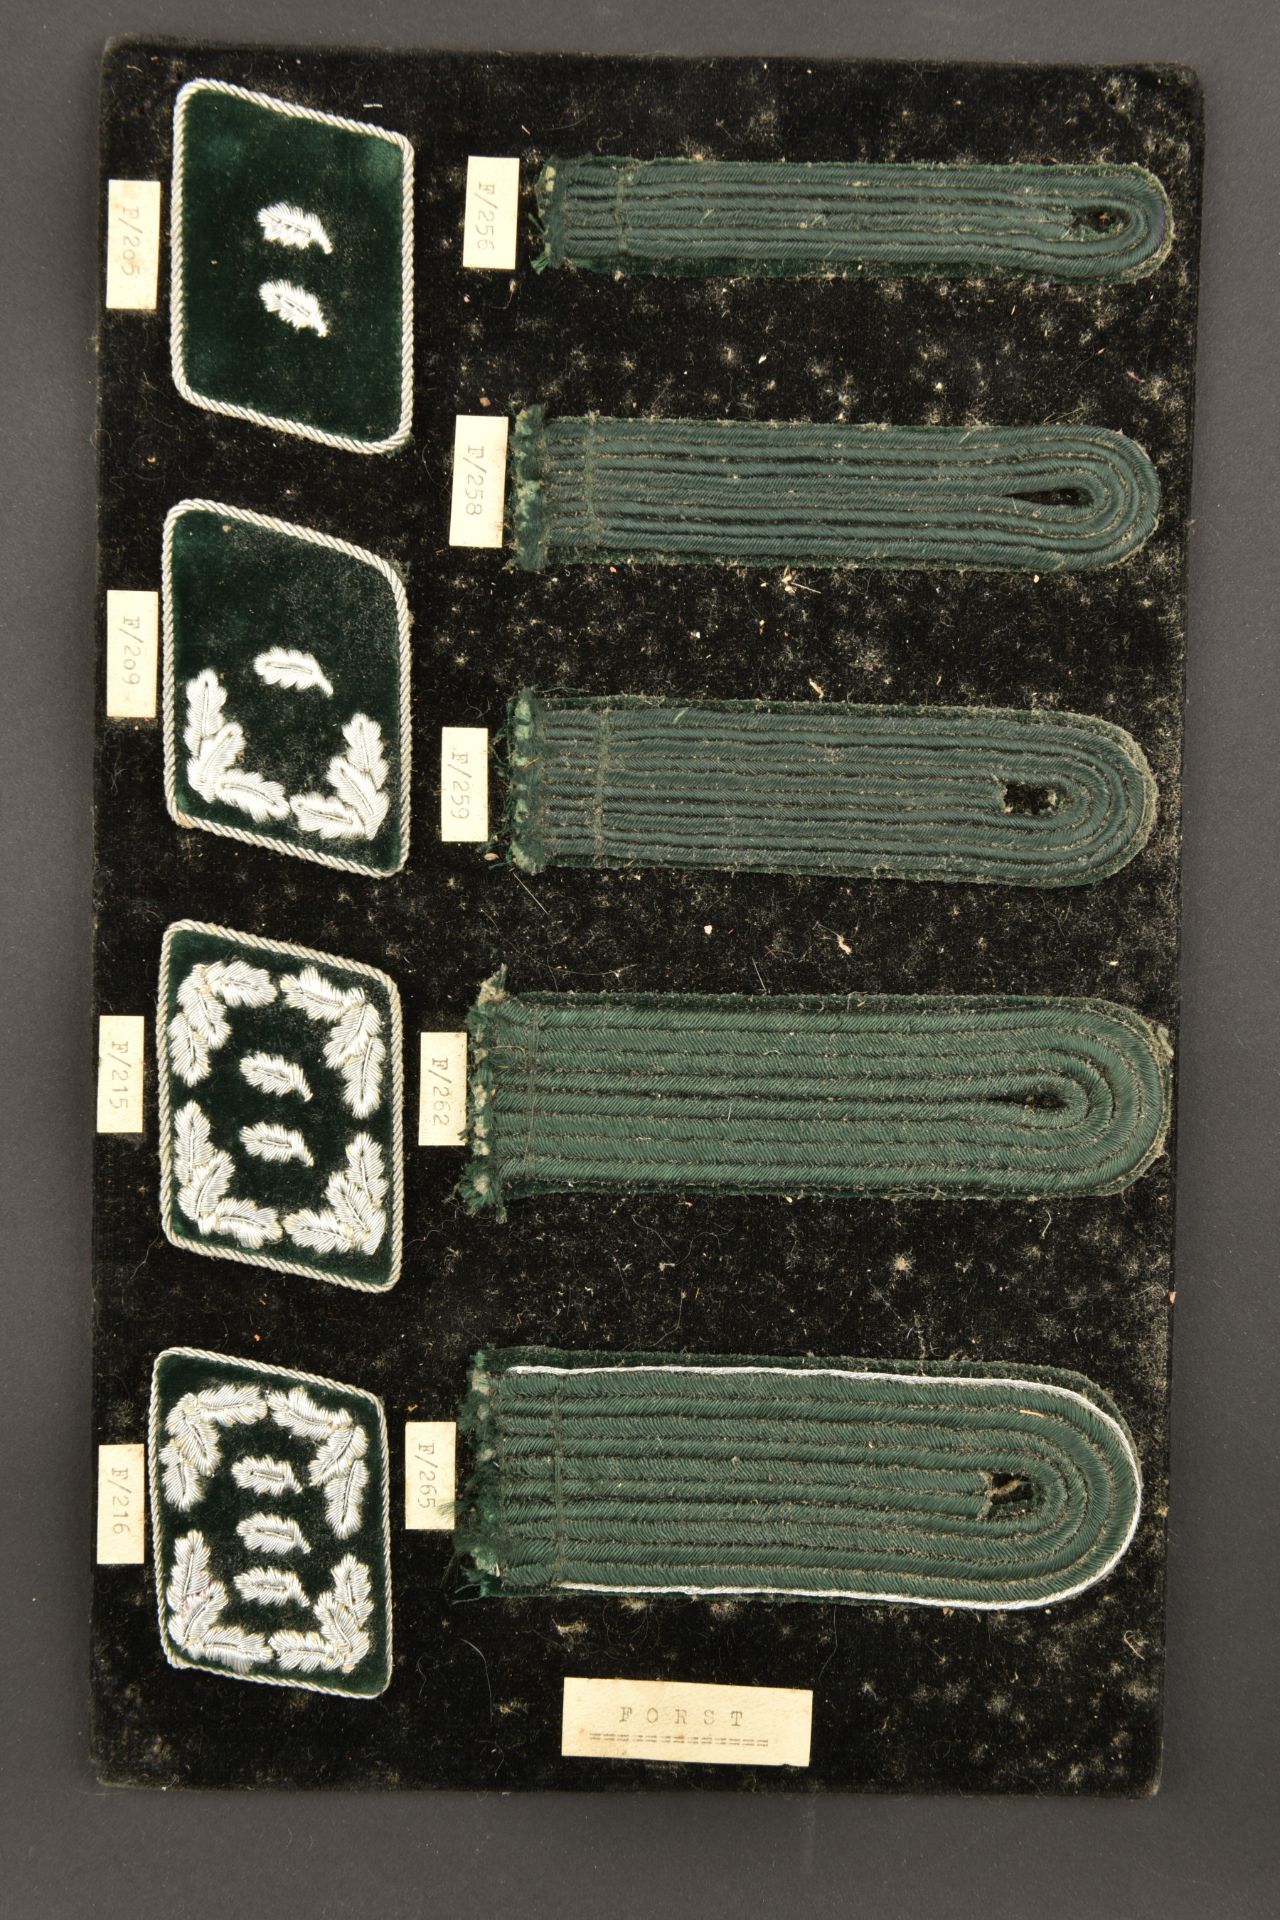 Planches d insignes originales. Original badge plates. - Image 14 of 14